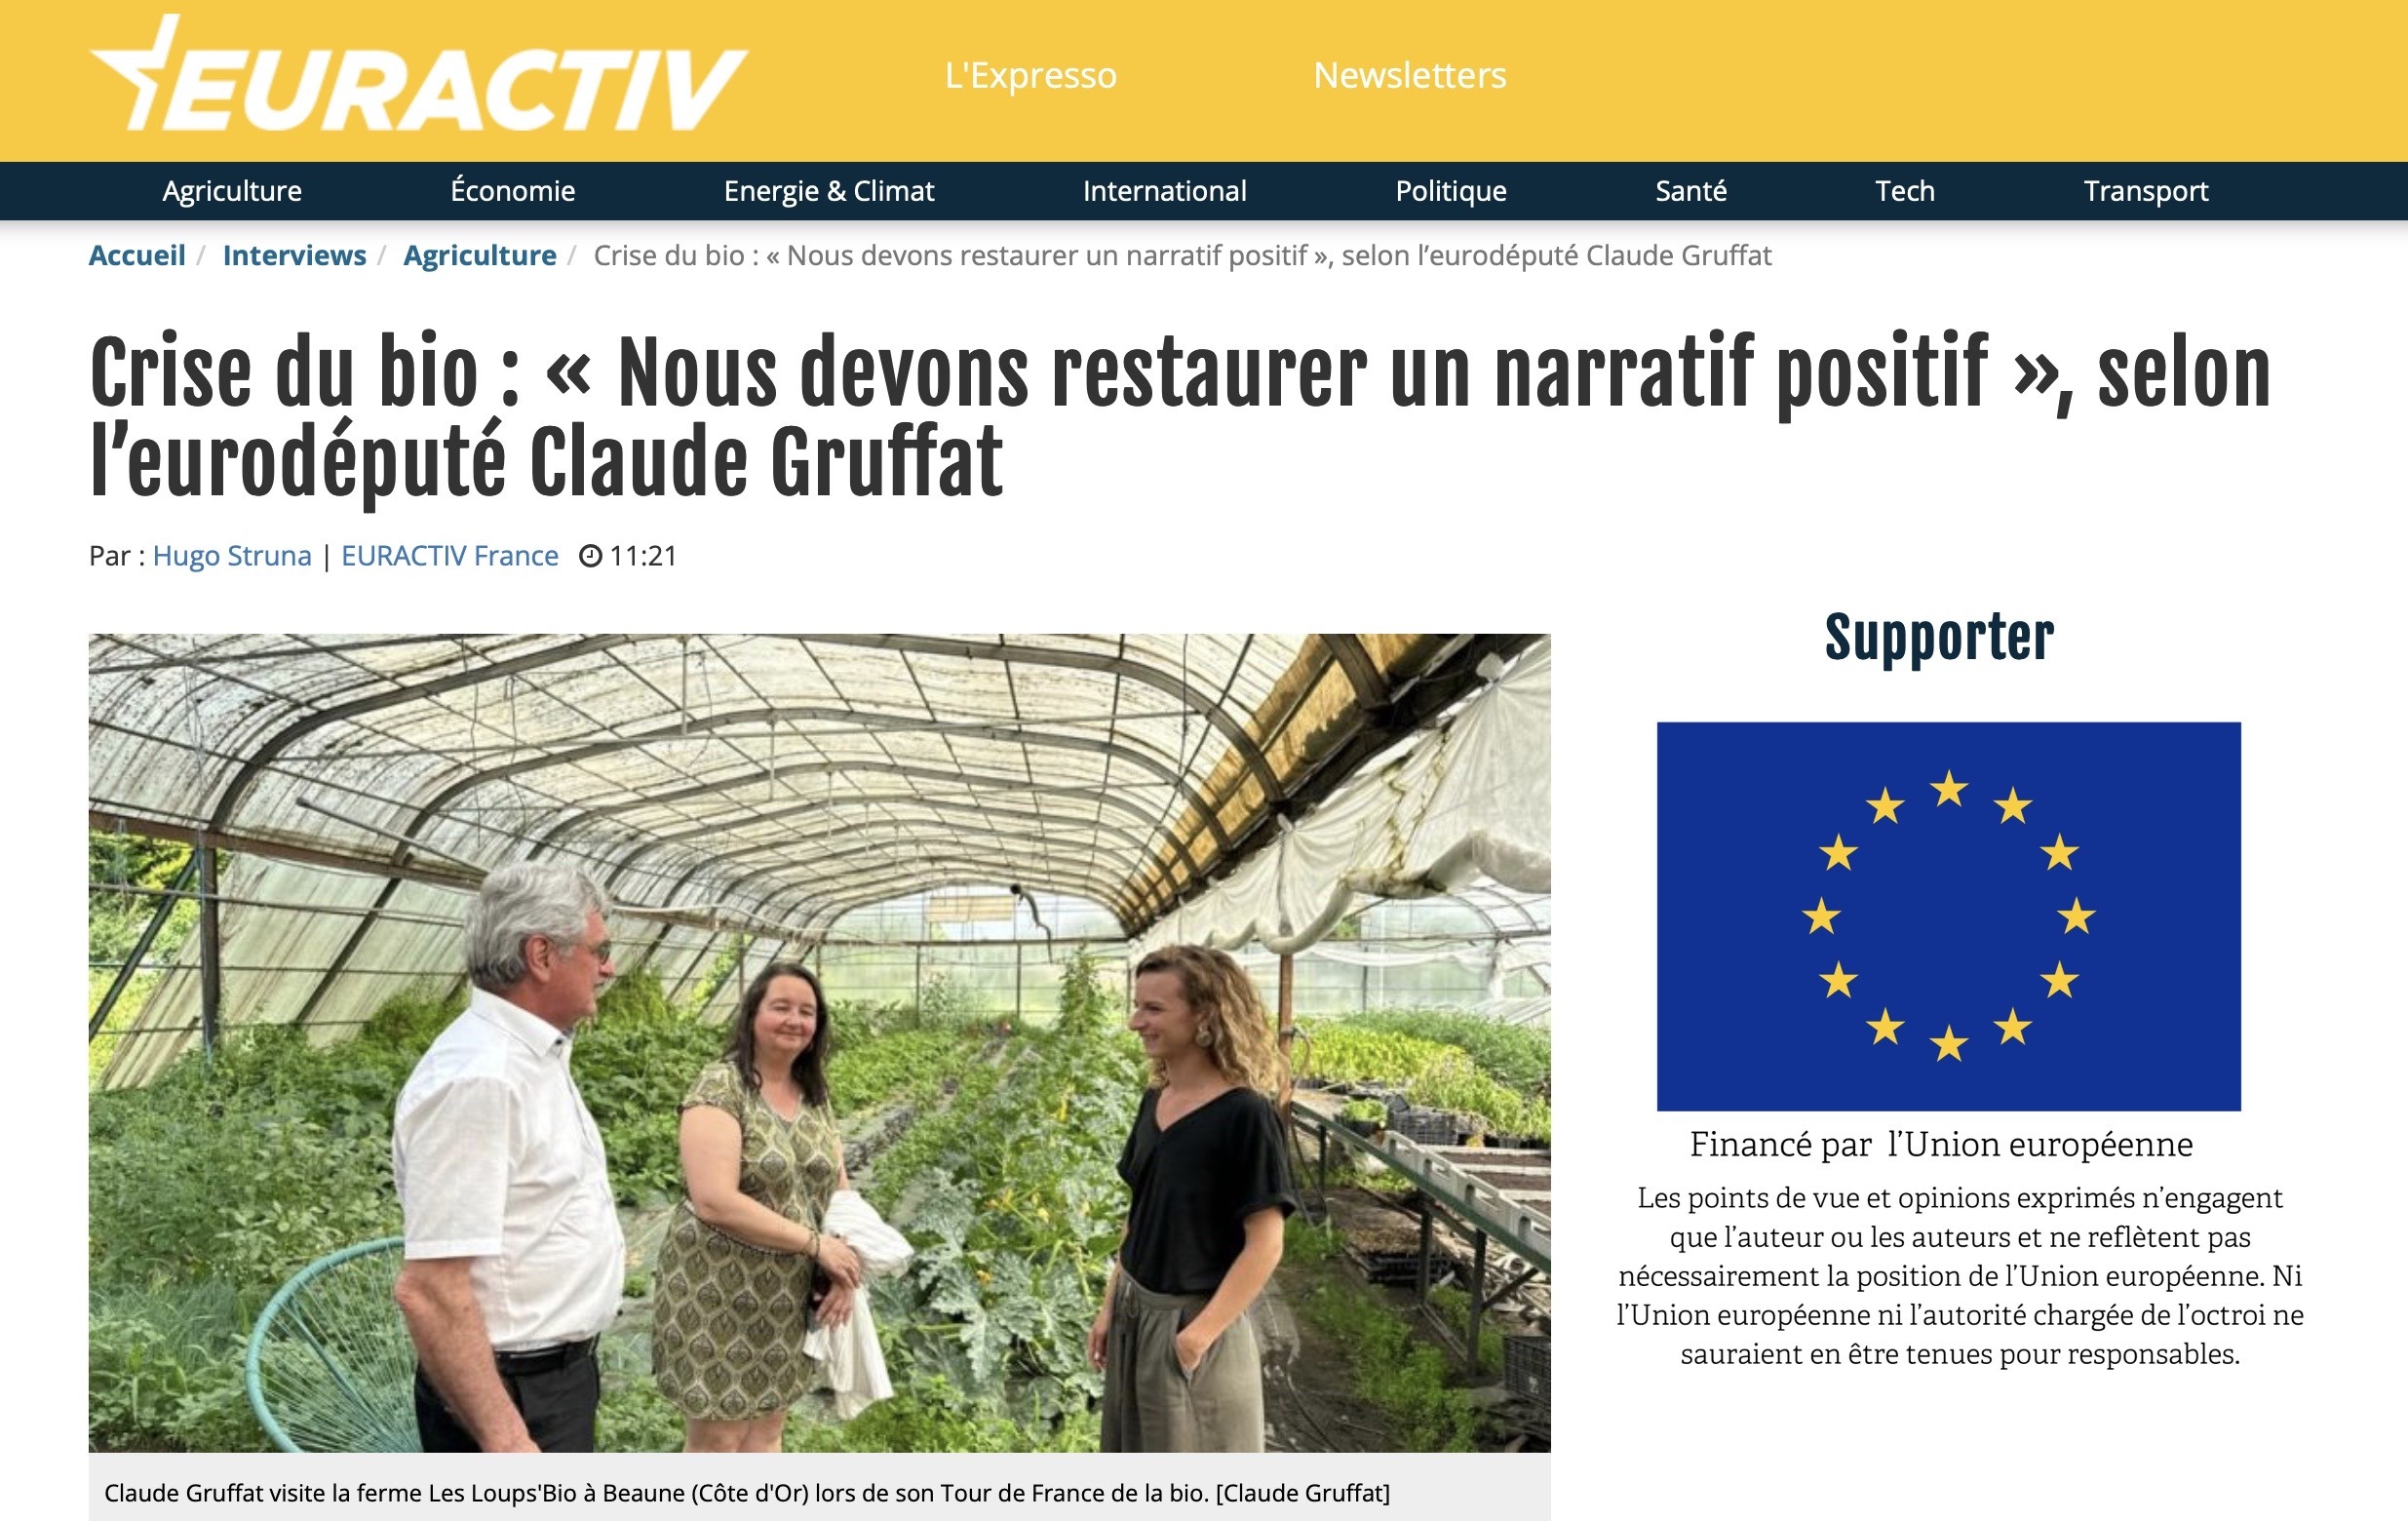 Euractiv / Crise du bio : nous devons restaurer un narratif positif, selon l'eurodéputé Claude Gruffat, Une du journal Euractiv